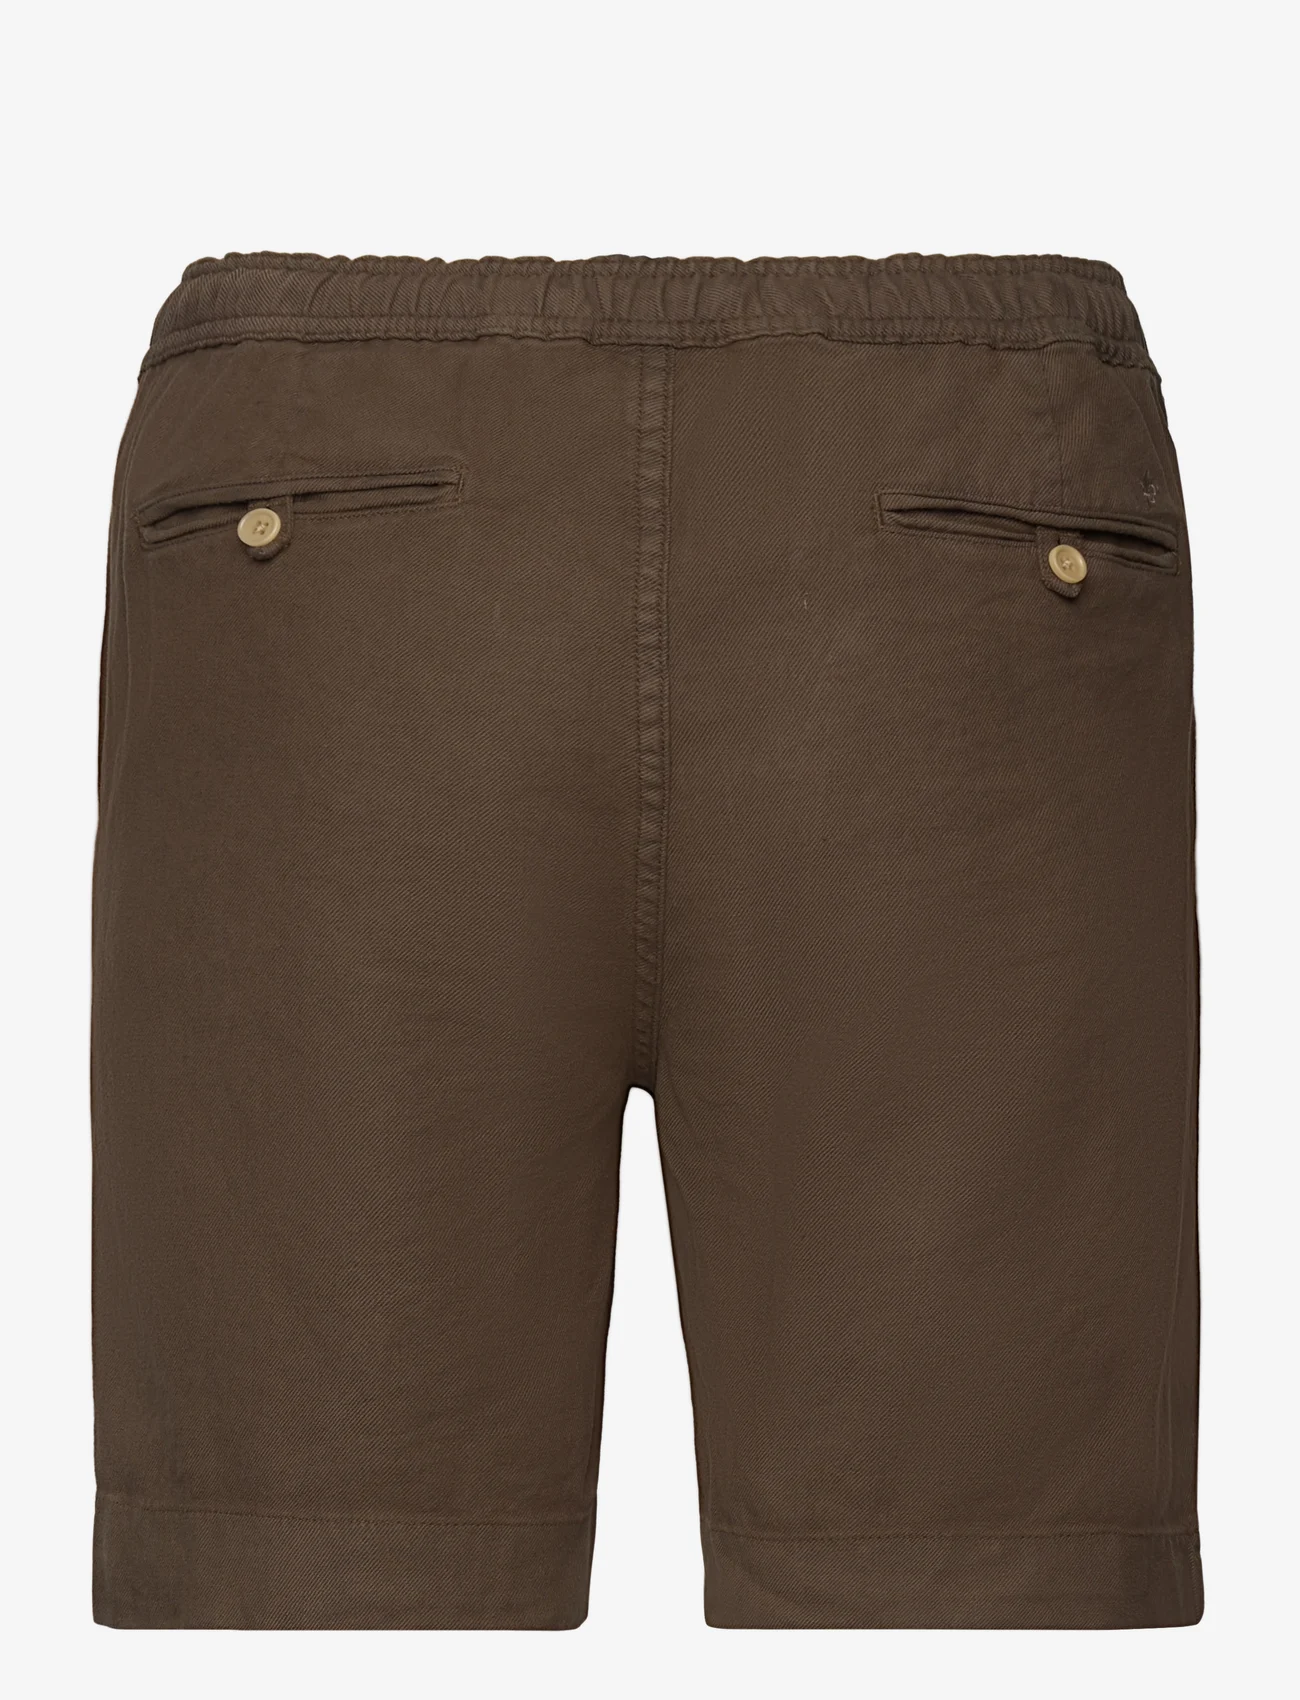 Morris - Winward Linen  Shorts - chinos shorts - brown - 1